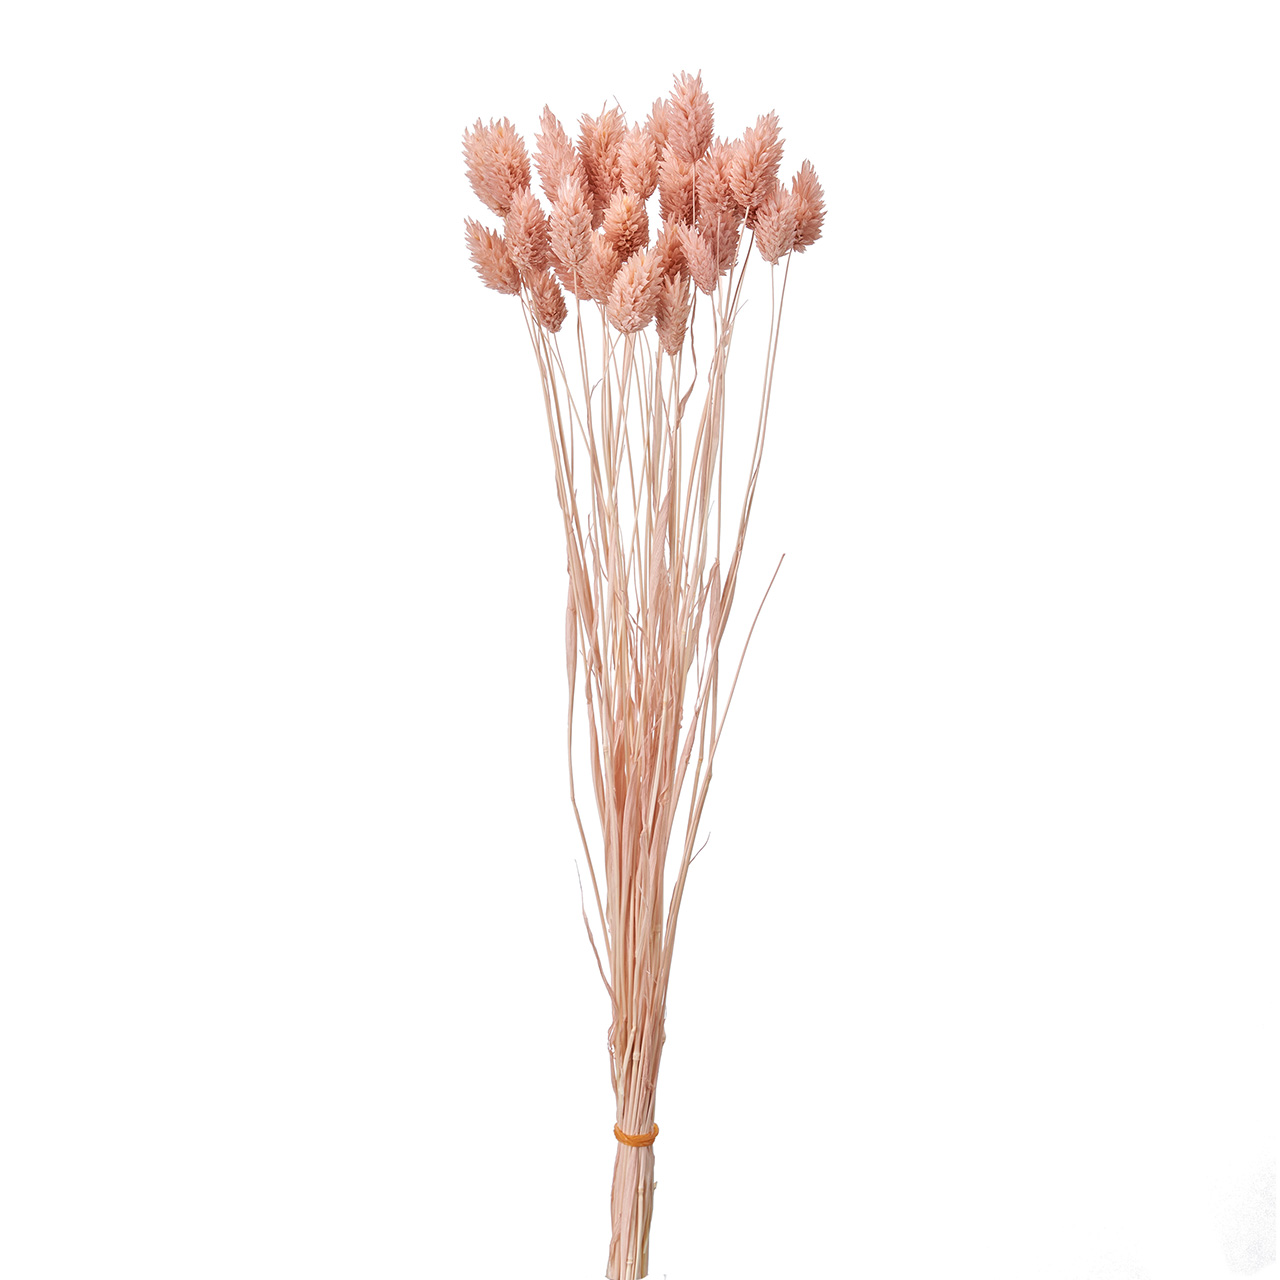 マイフラ 通販 ポアプランツ ピンクグレープ ドライフラワー カラー Fd 062 ピンクグレープ ドライフラワー ナチュラル素材 全国にmagiq 花器 花資材などをお届けします